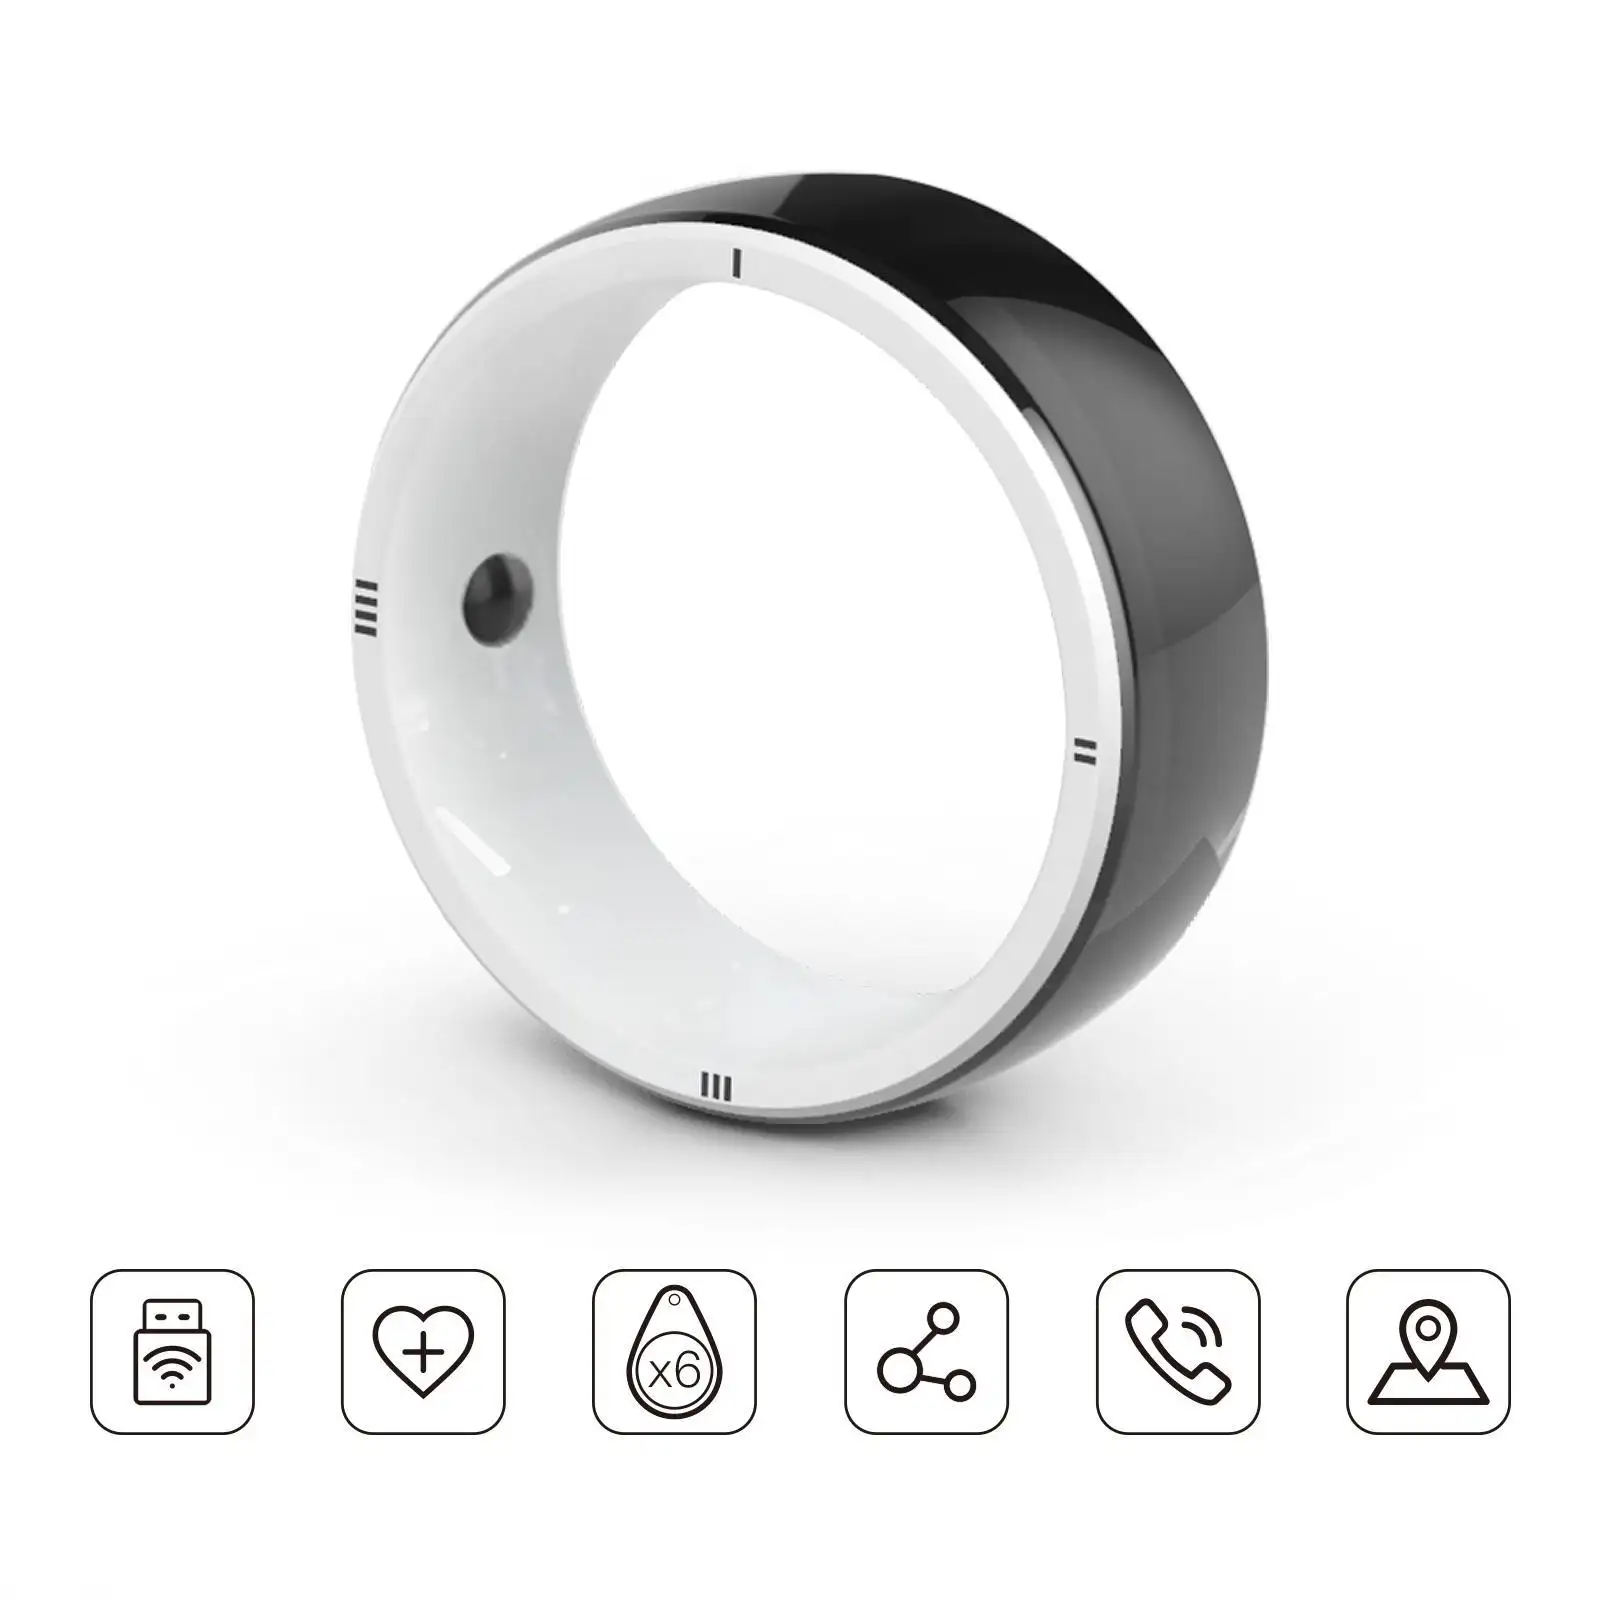 JAKCOM R5 Smart Ring New Smart Ring Meilleur cadeau avec carte mère y1 prix 4x6 haut-parleur clavier étui 2018 asrock mini itx